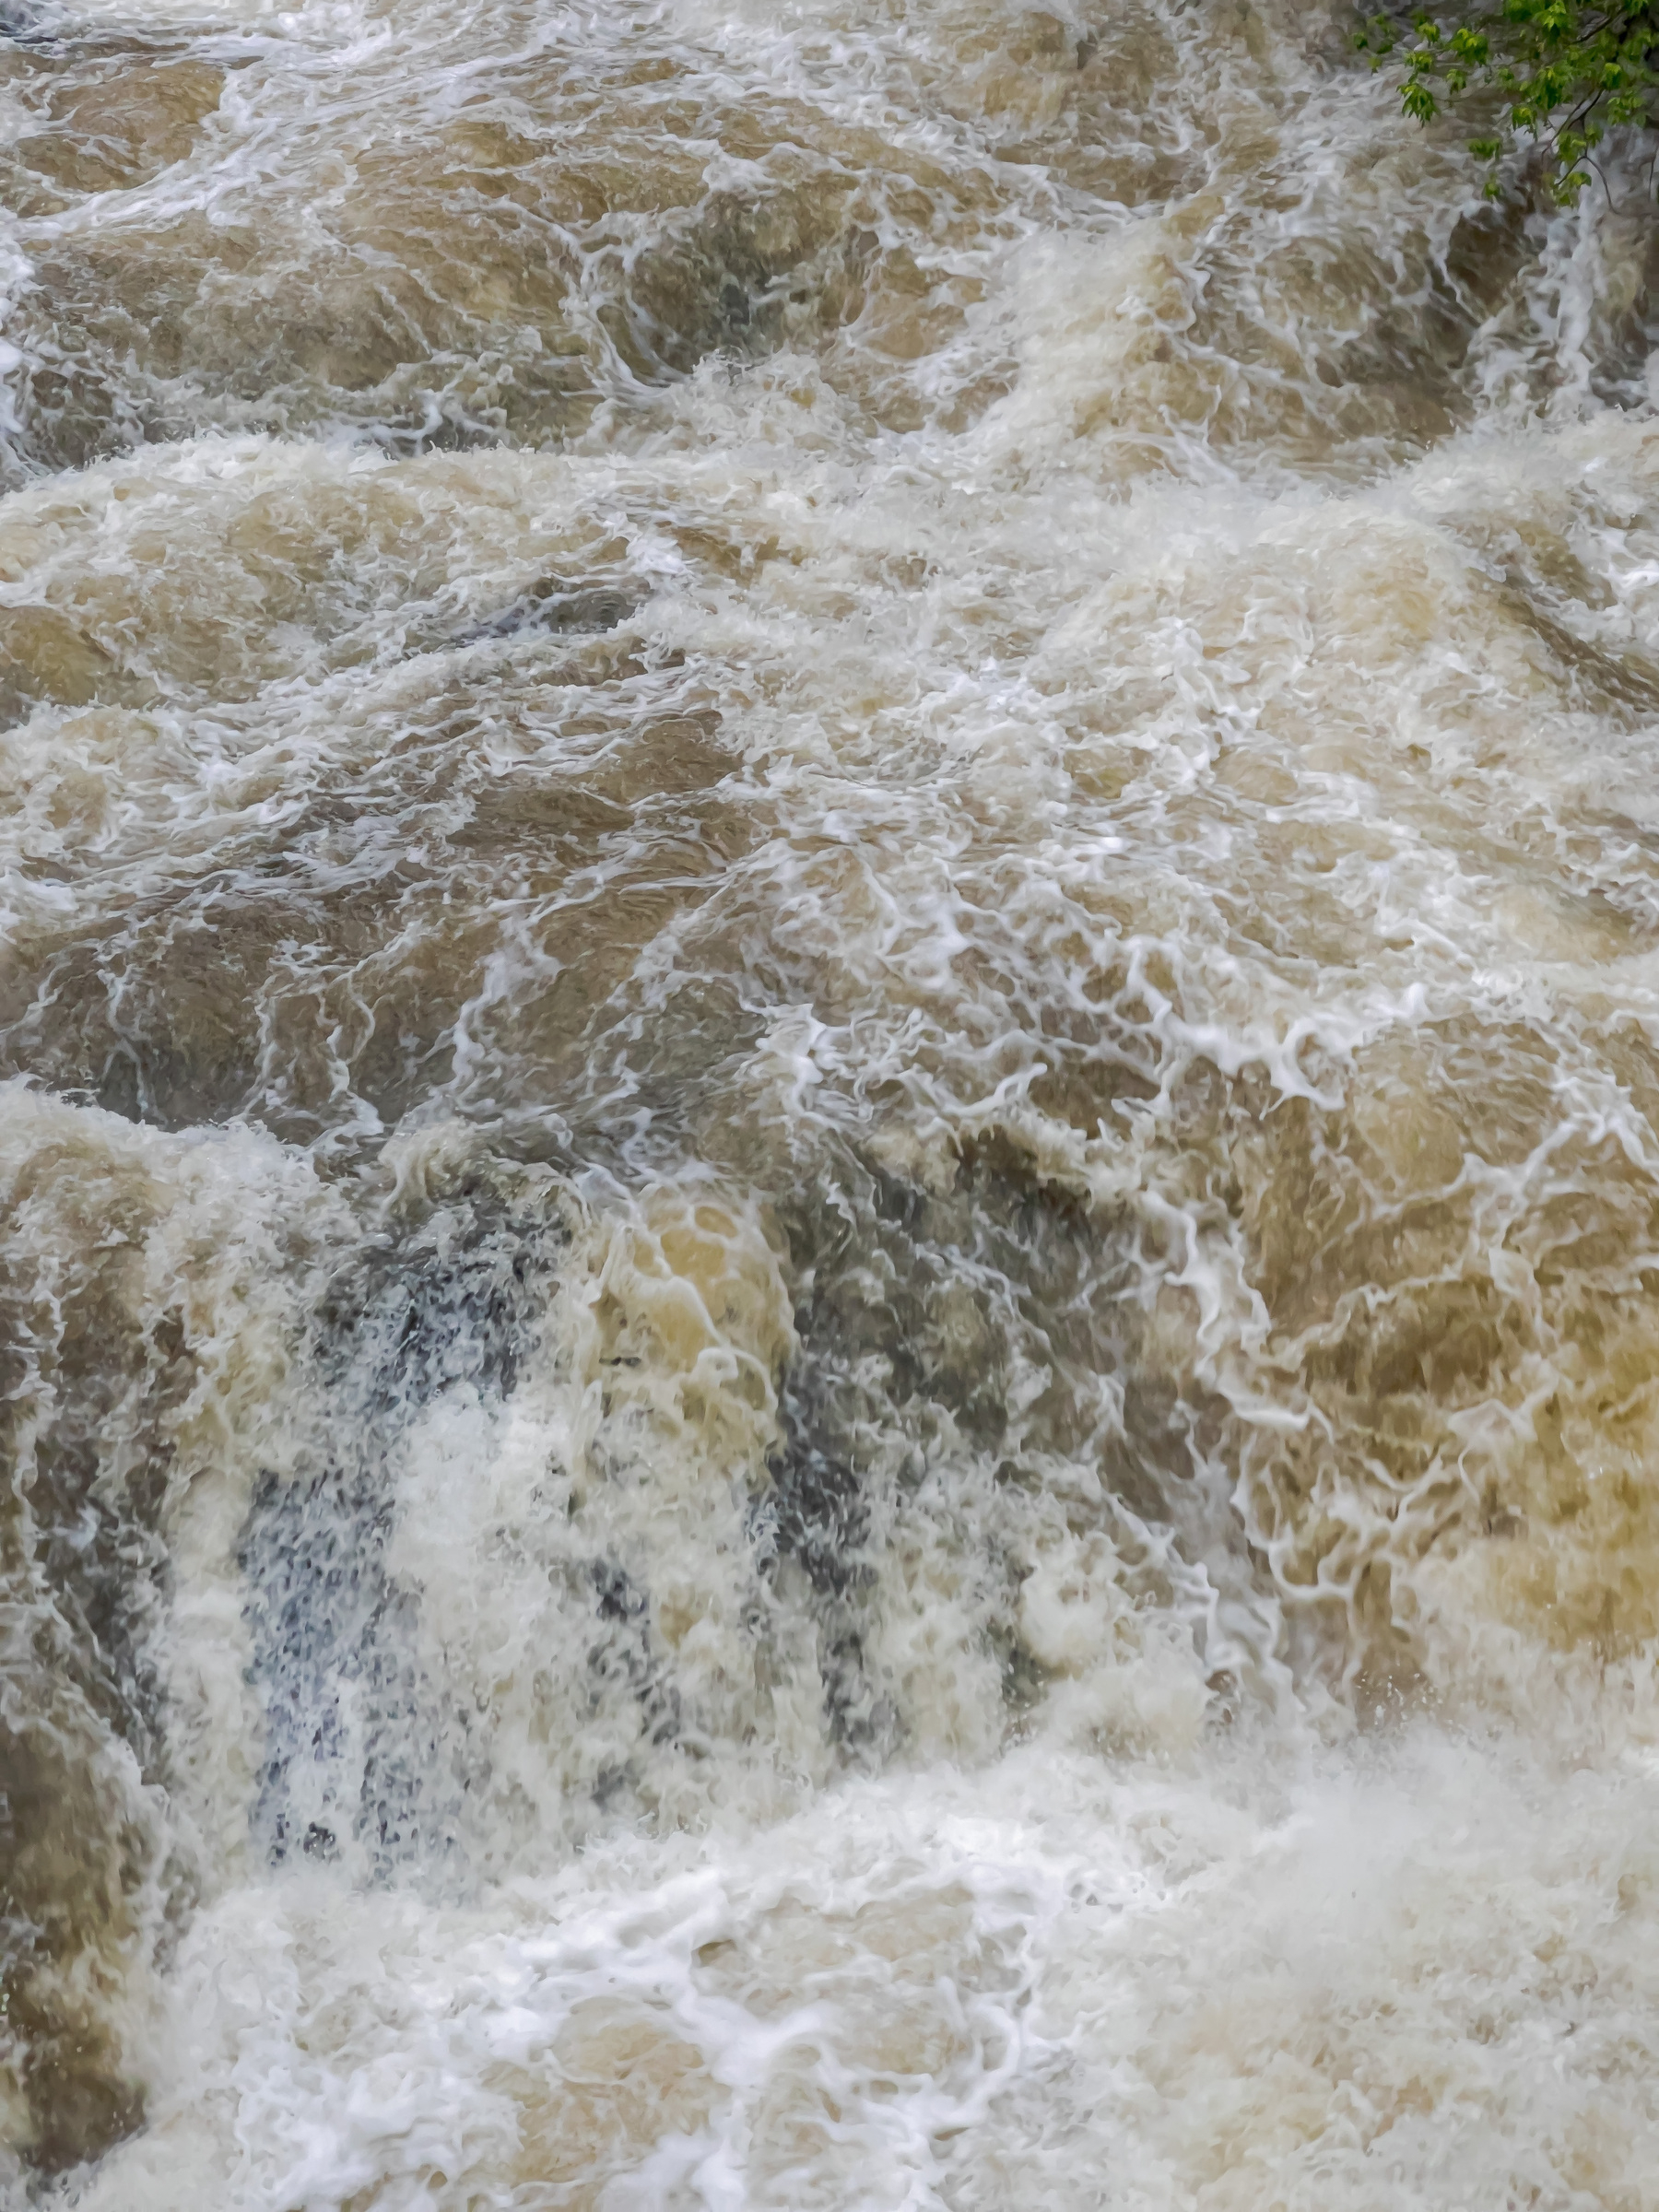 Rapids in creek swollen by rain.